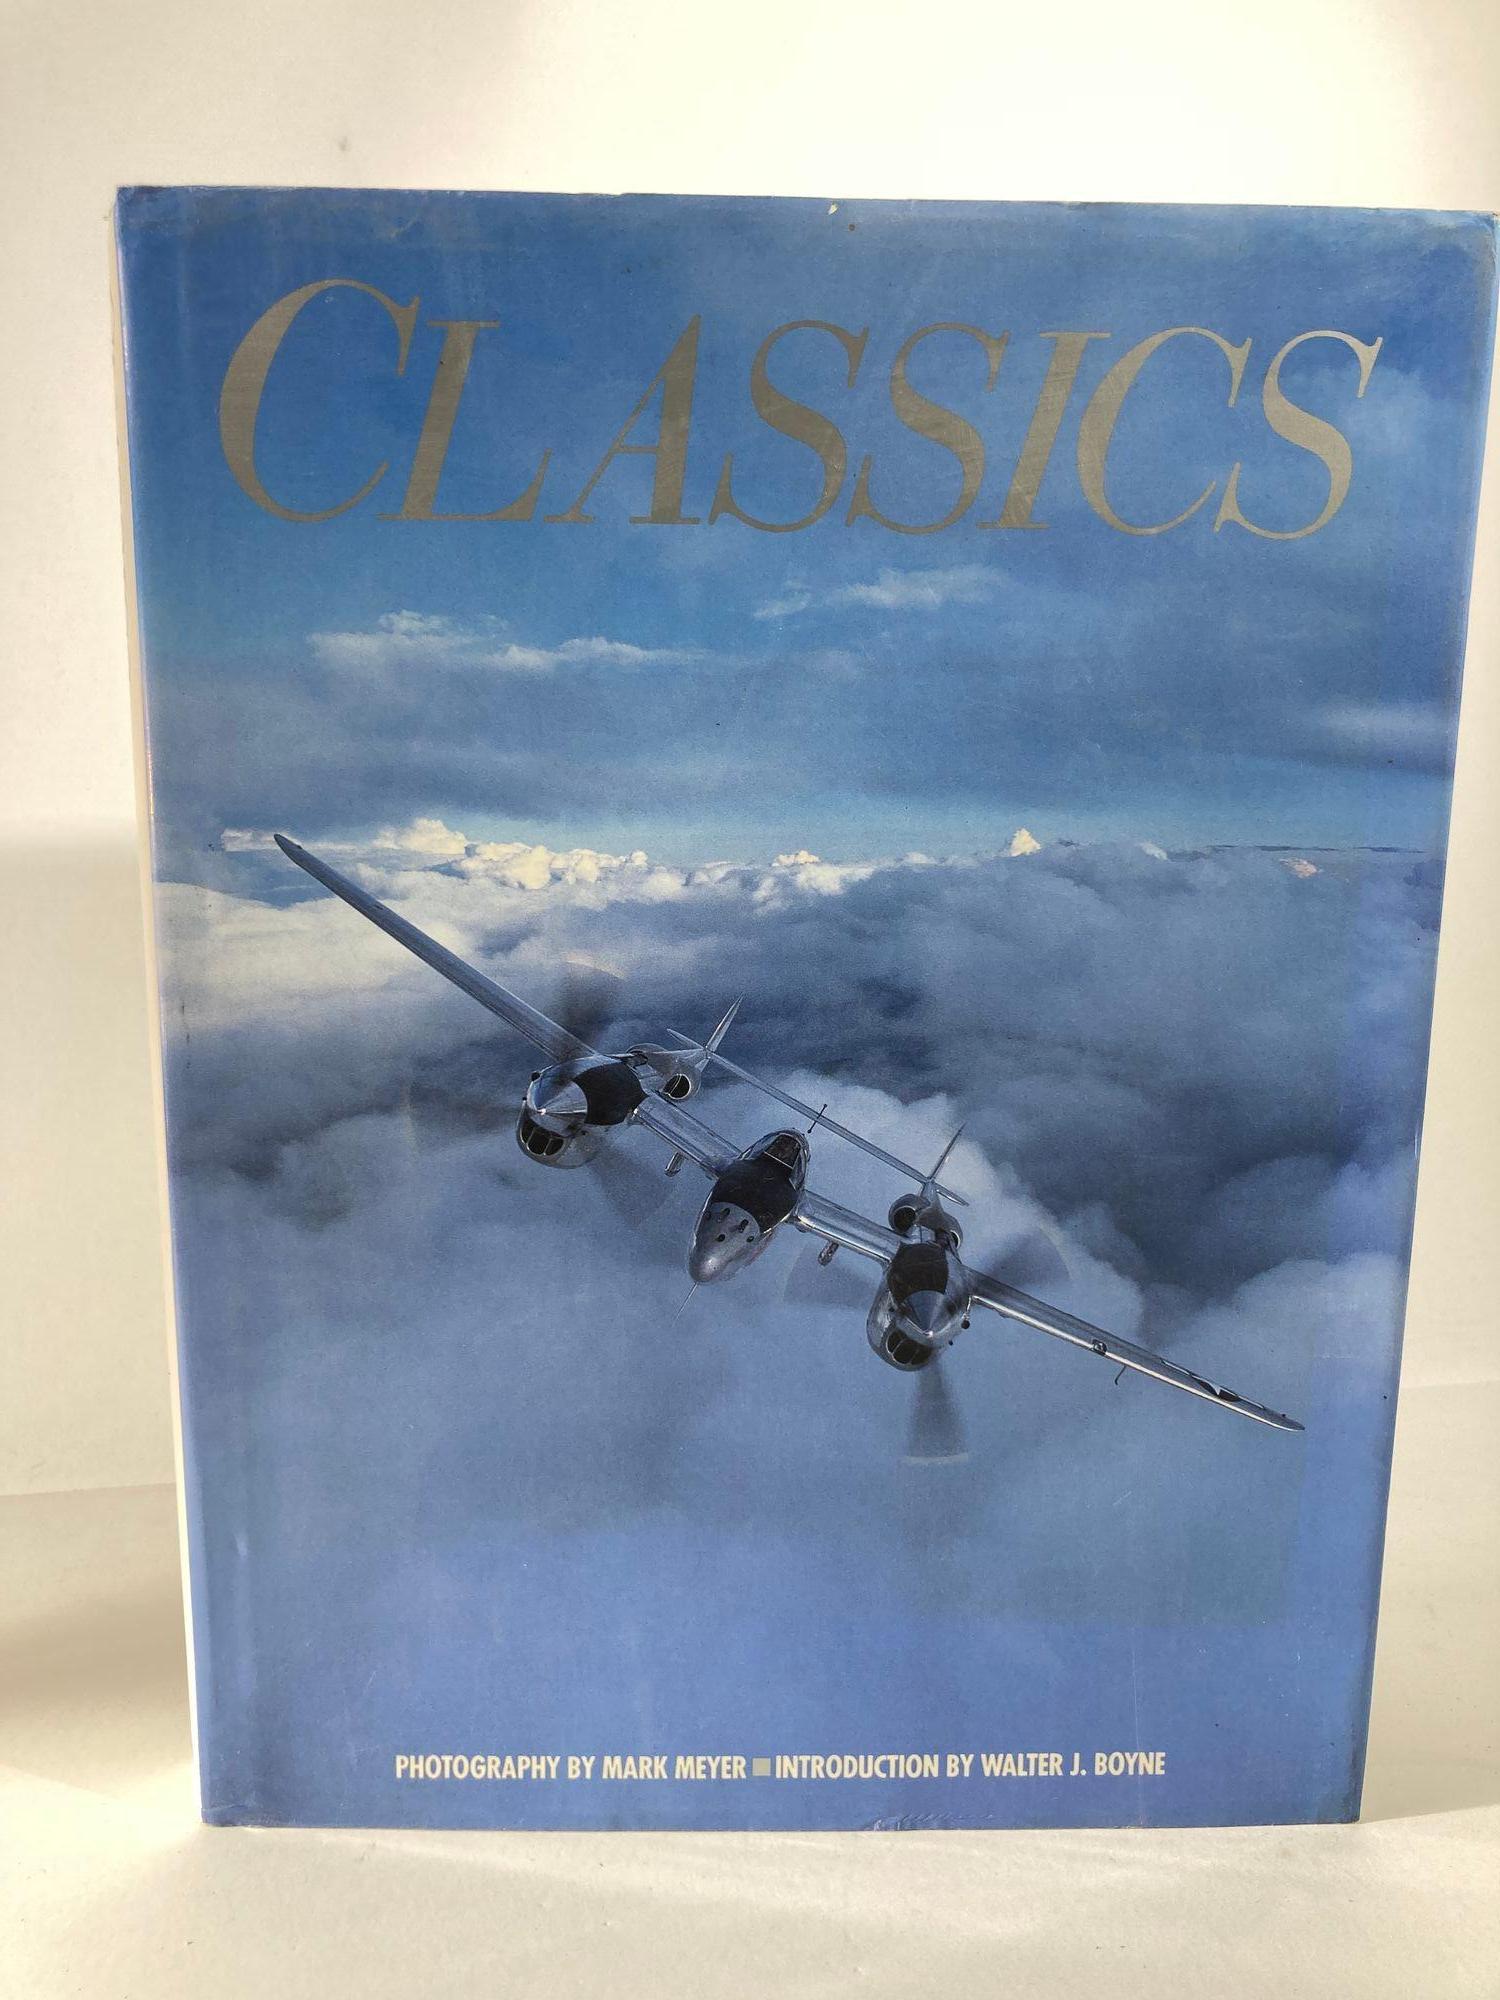 Classics : U. S. Aircraft of World War II par Walter J. Boyne, Mark Meyers.
Incontournable pour tout amateur de la Seconde Guerre mondiale, cette collection comprend des photographies d'avions restaurés et des entretiens avec les hommes qui les ont